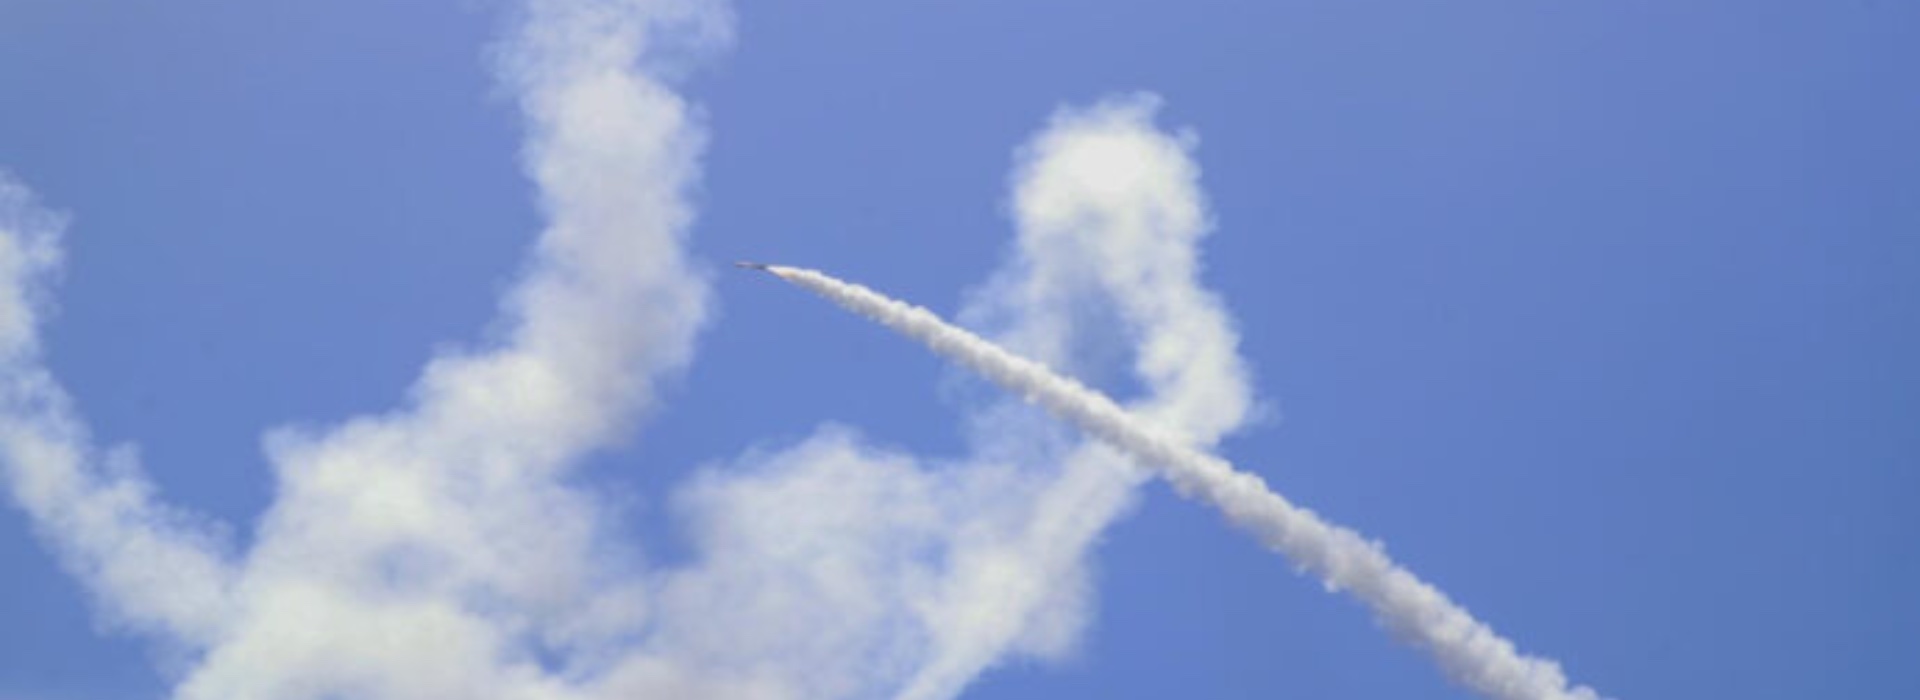 Israele e la sua difesa aerea: tecnologie ed efficacia dei sistemi Iron Dome e Arrow 3